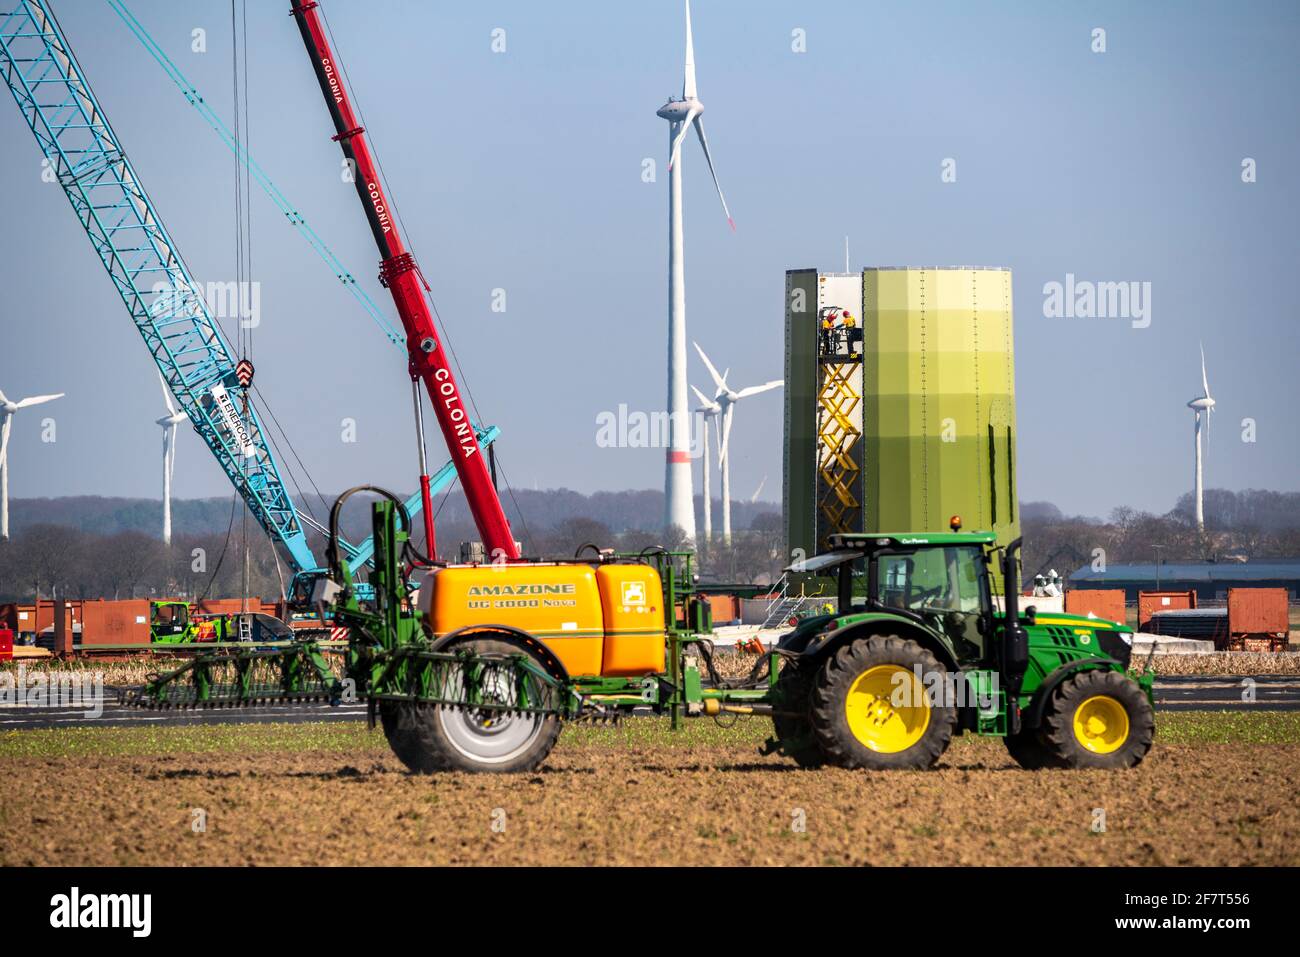 Construcción de un aerogenerador, pilar de acero por Enercon, cerca de Kerken, distrito de Kleve, en el Bajo Rin, el agricultor saca la protección de la planta Foto de stock